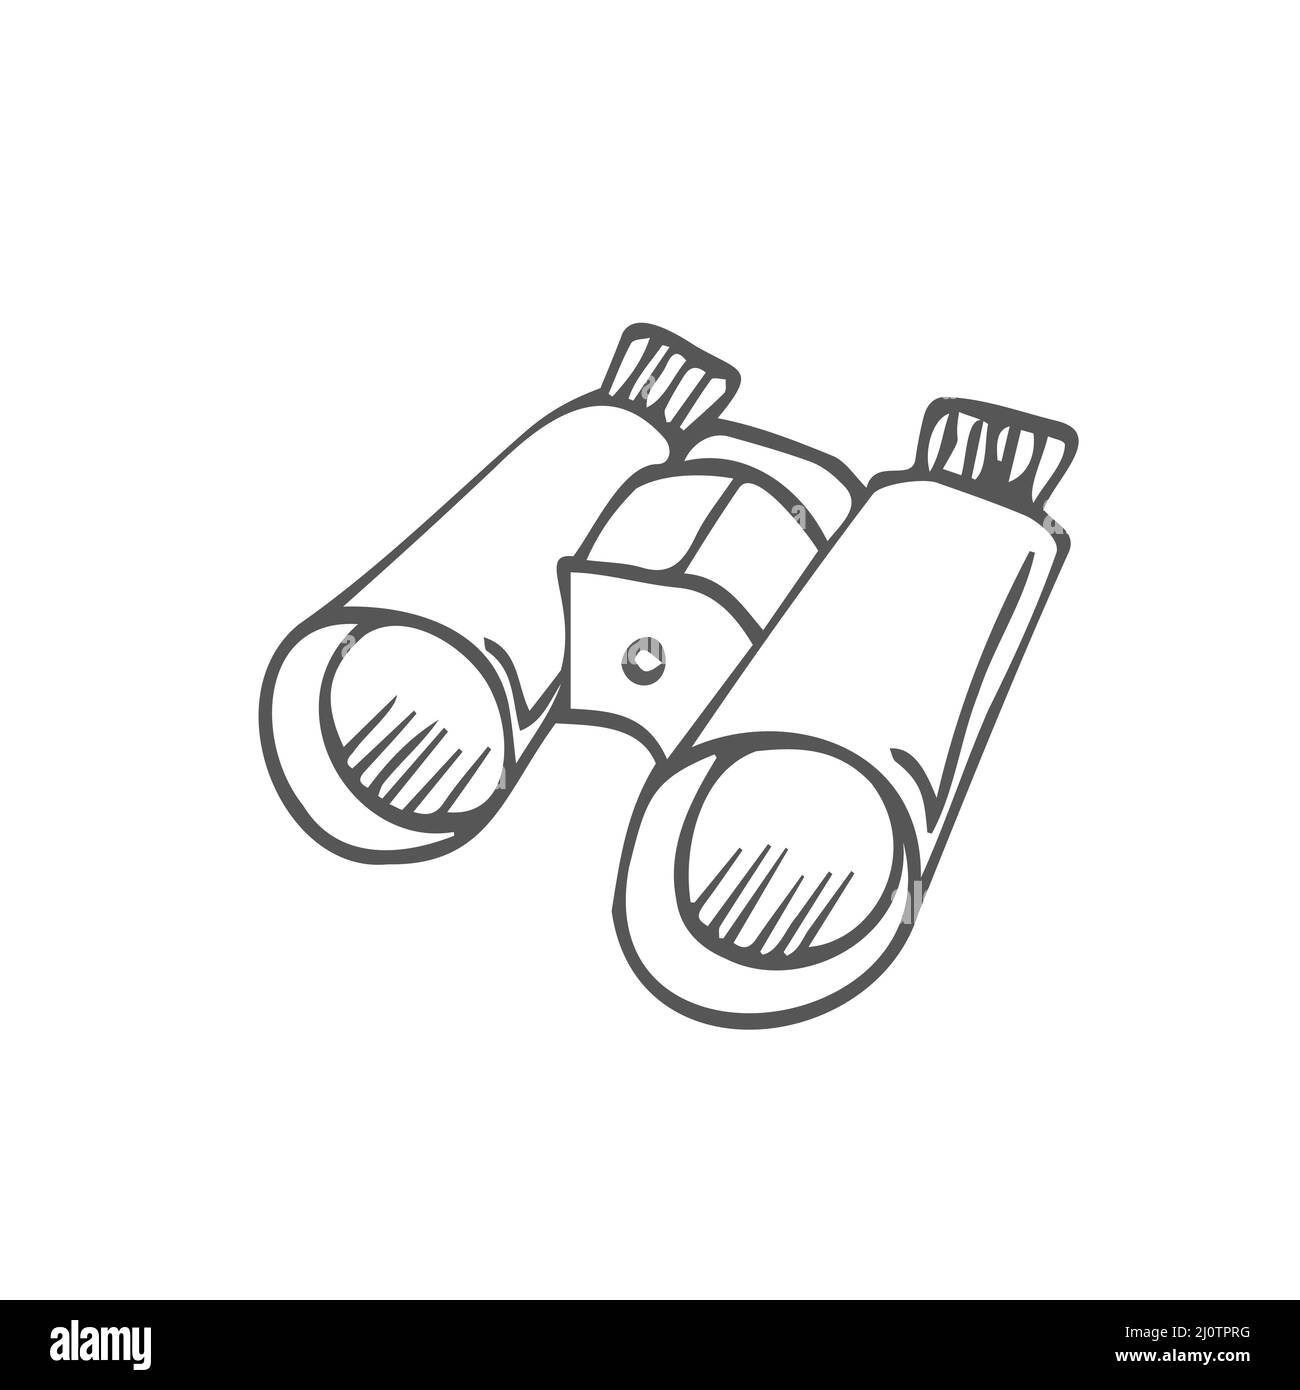 Handgezeichnete Vektor Camping Fernglas Doodle Clipart. Isoliert auf weißem  Hintergrund Zeichnung für Drucke, Poster, niedliche Papeterie, Reise-Design  Stock-Vektorgrafik - Alamy